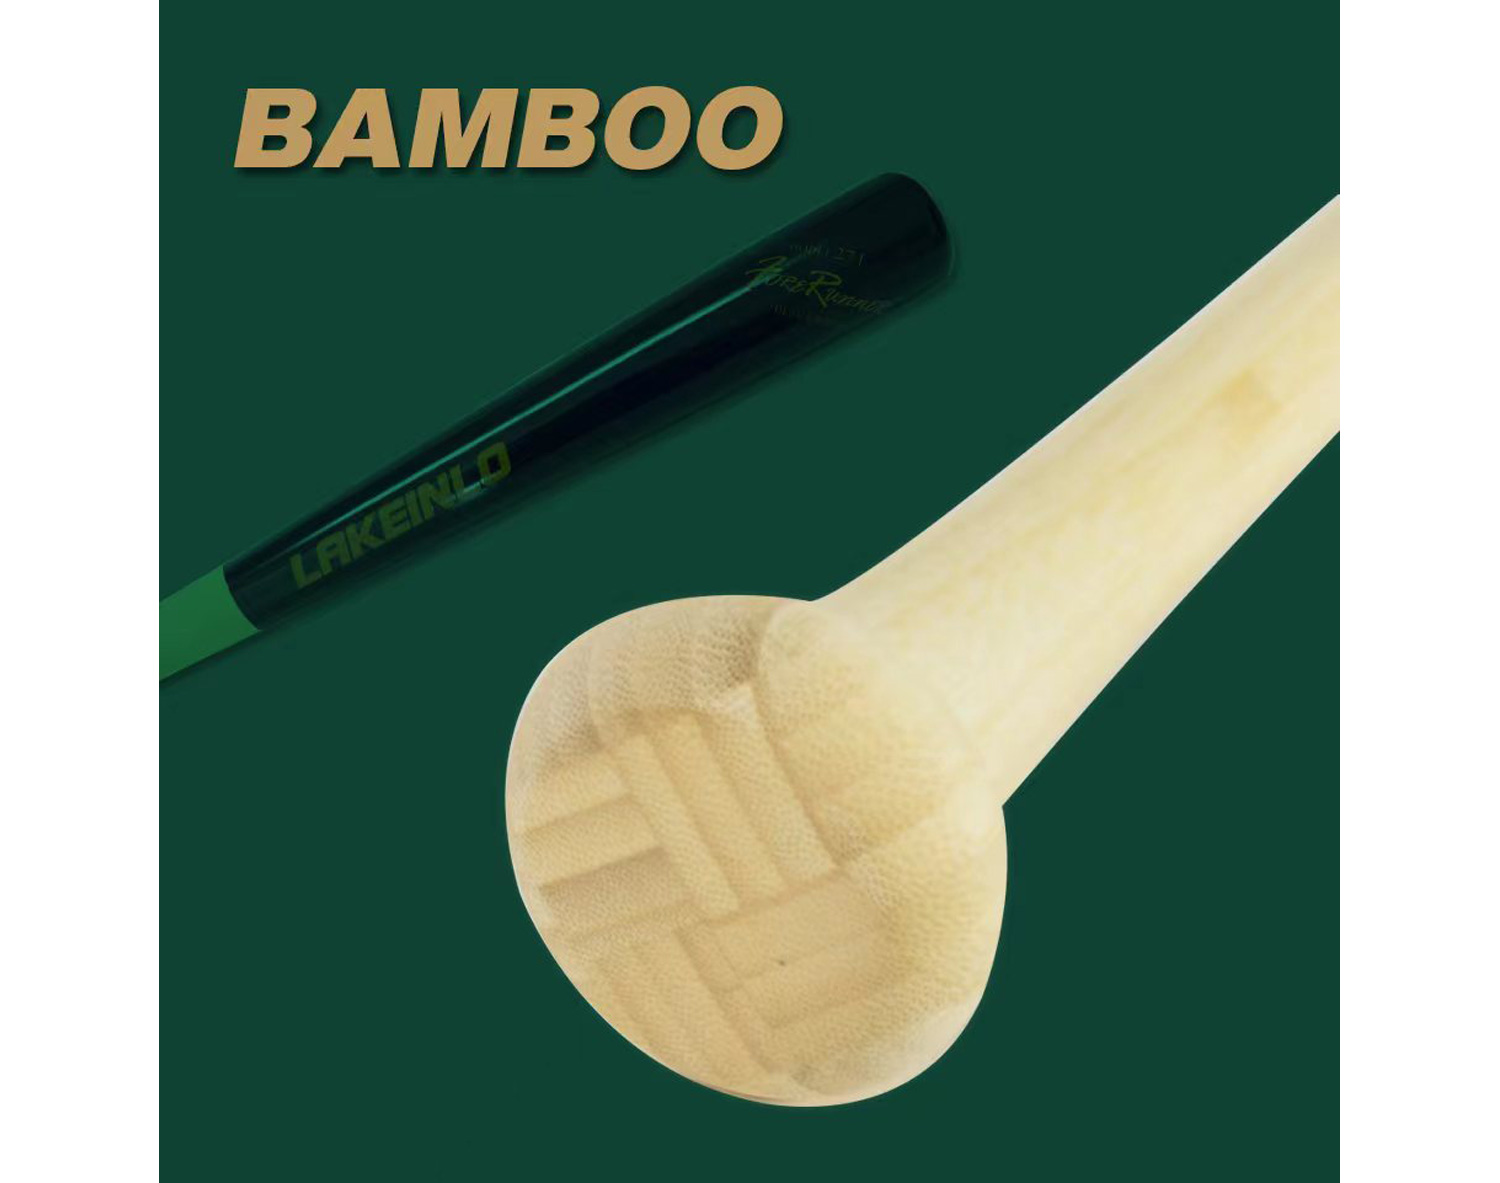 Bamboo Bat